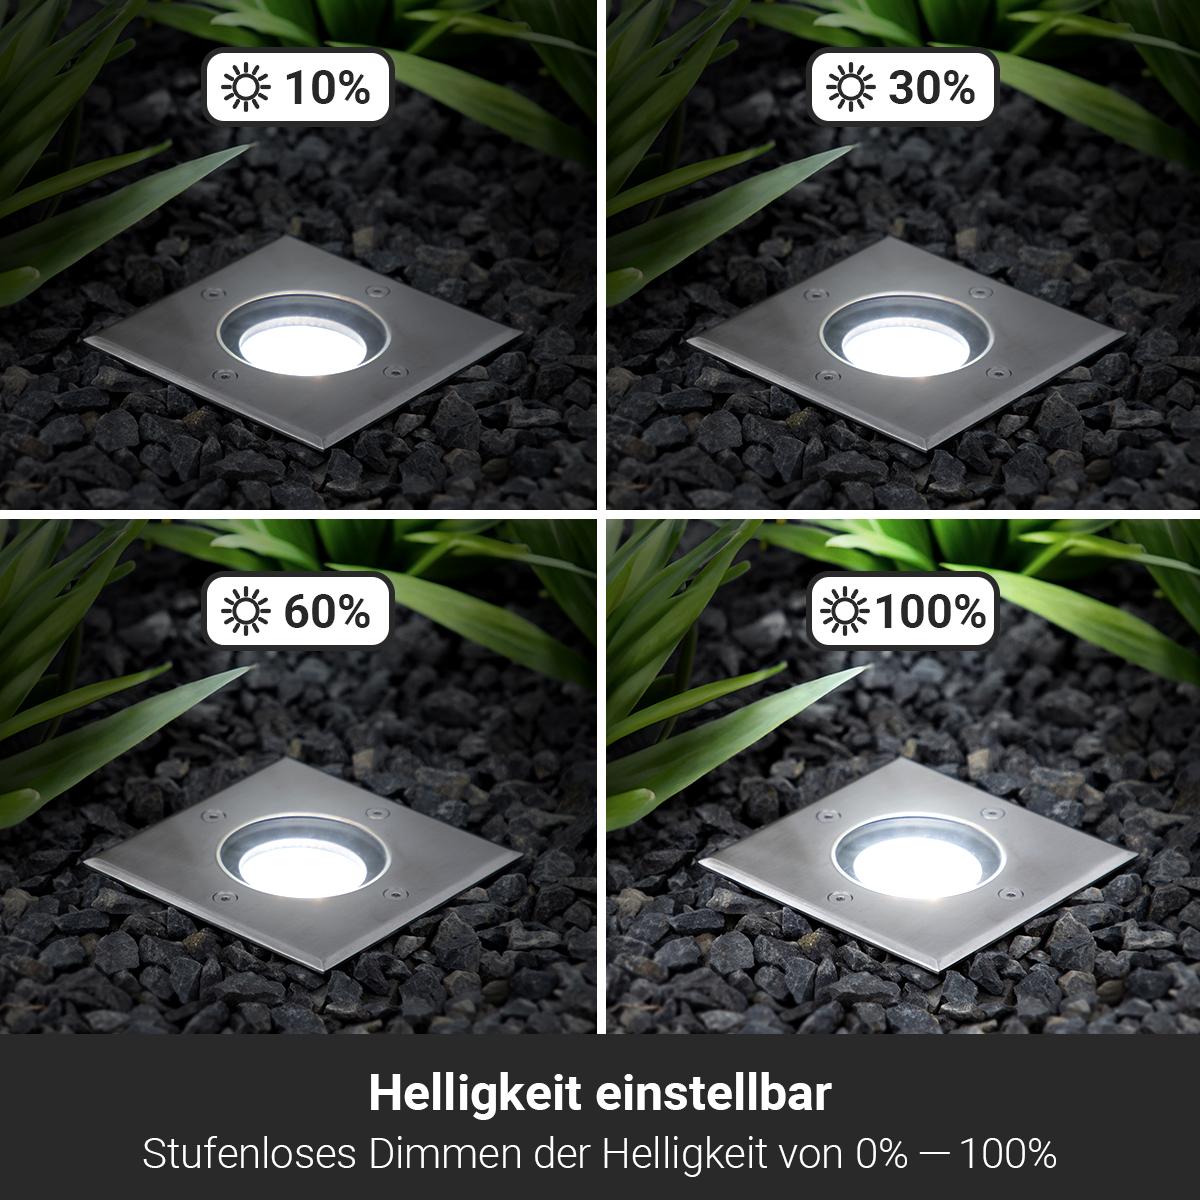 LED Bodeneinbaustrahler eckig Edelstahl 230V IP67 - Leuchtmittel: GU10 5W 4000K DIMMBAR - Anzahl: 3x